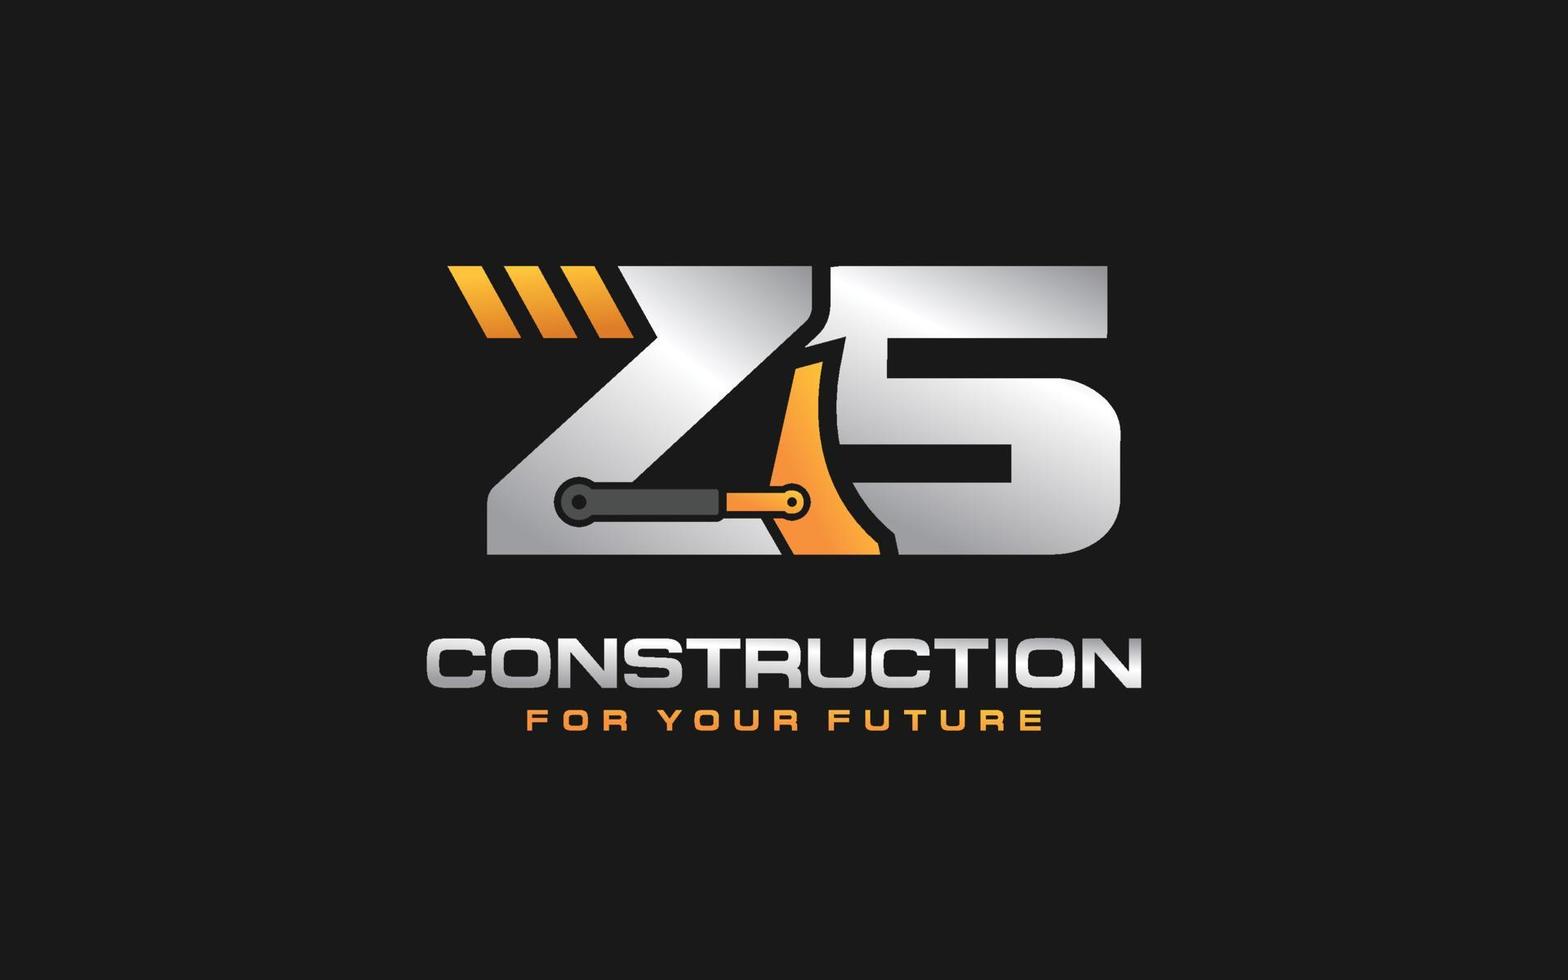 Excavadora con logotipo zs para empresa constructora. ilustración de vector de plantilla de equipo pesado para su marca.